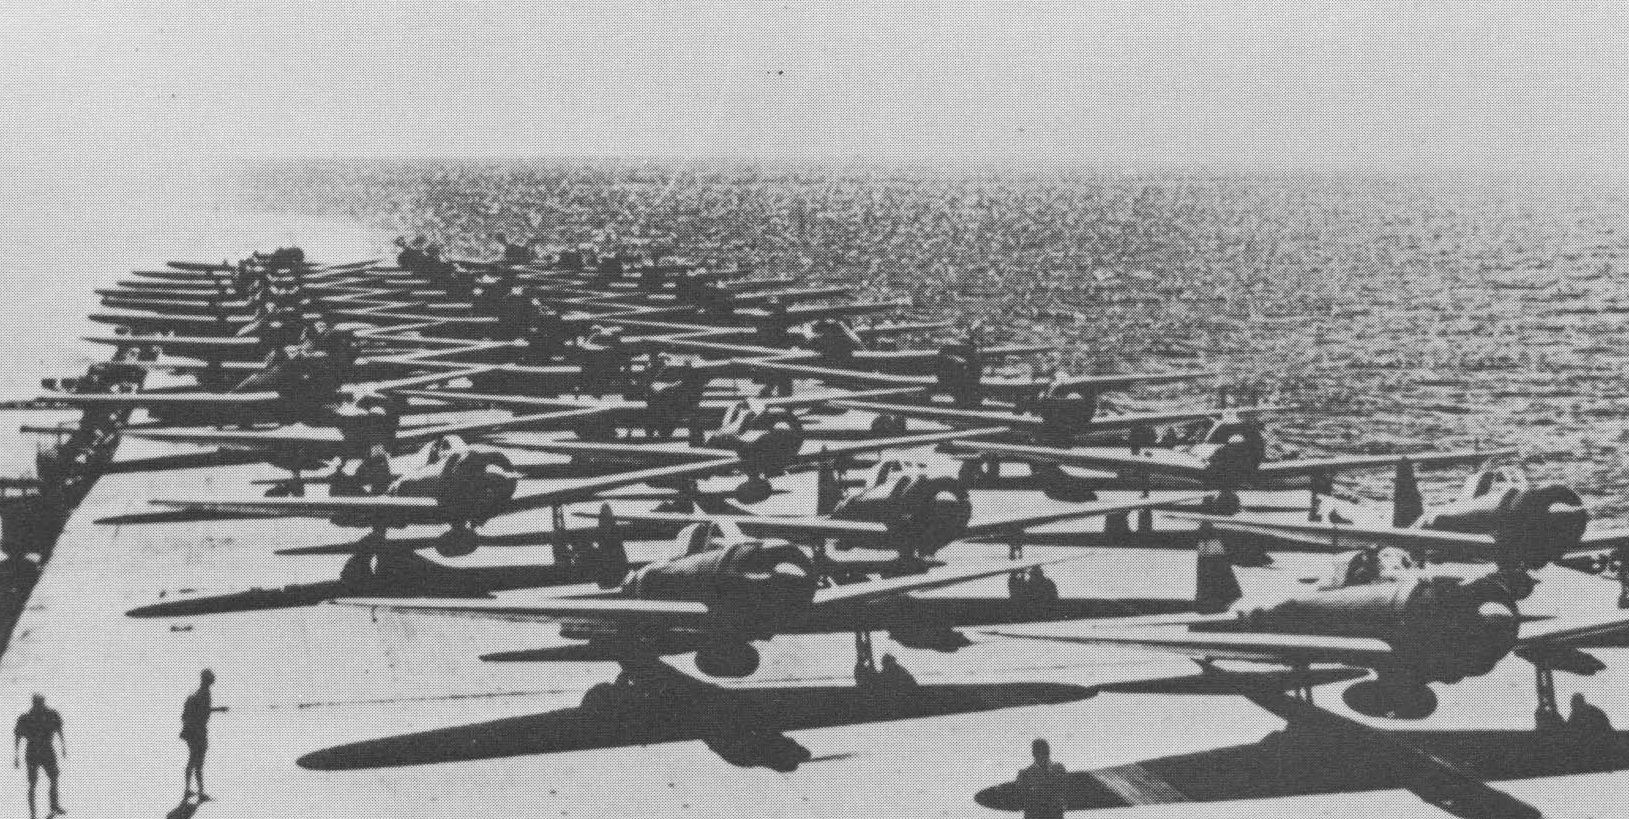 Zuikaku Air Group. Indian Ocean, April 1942